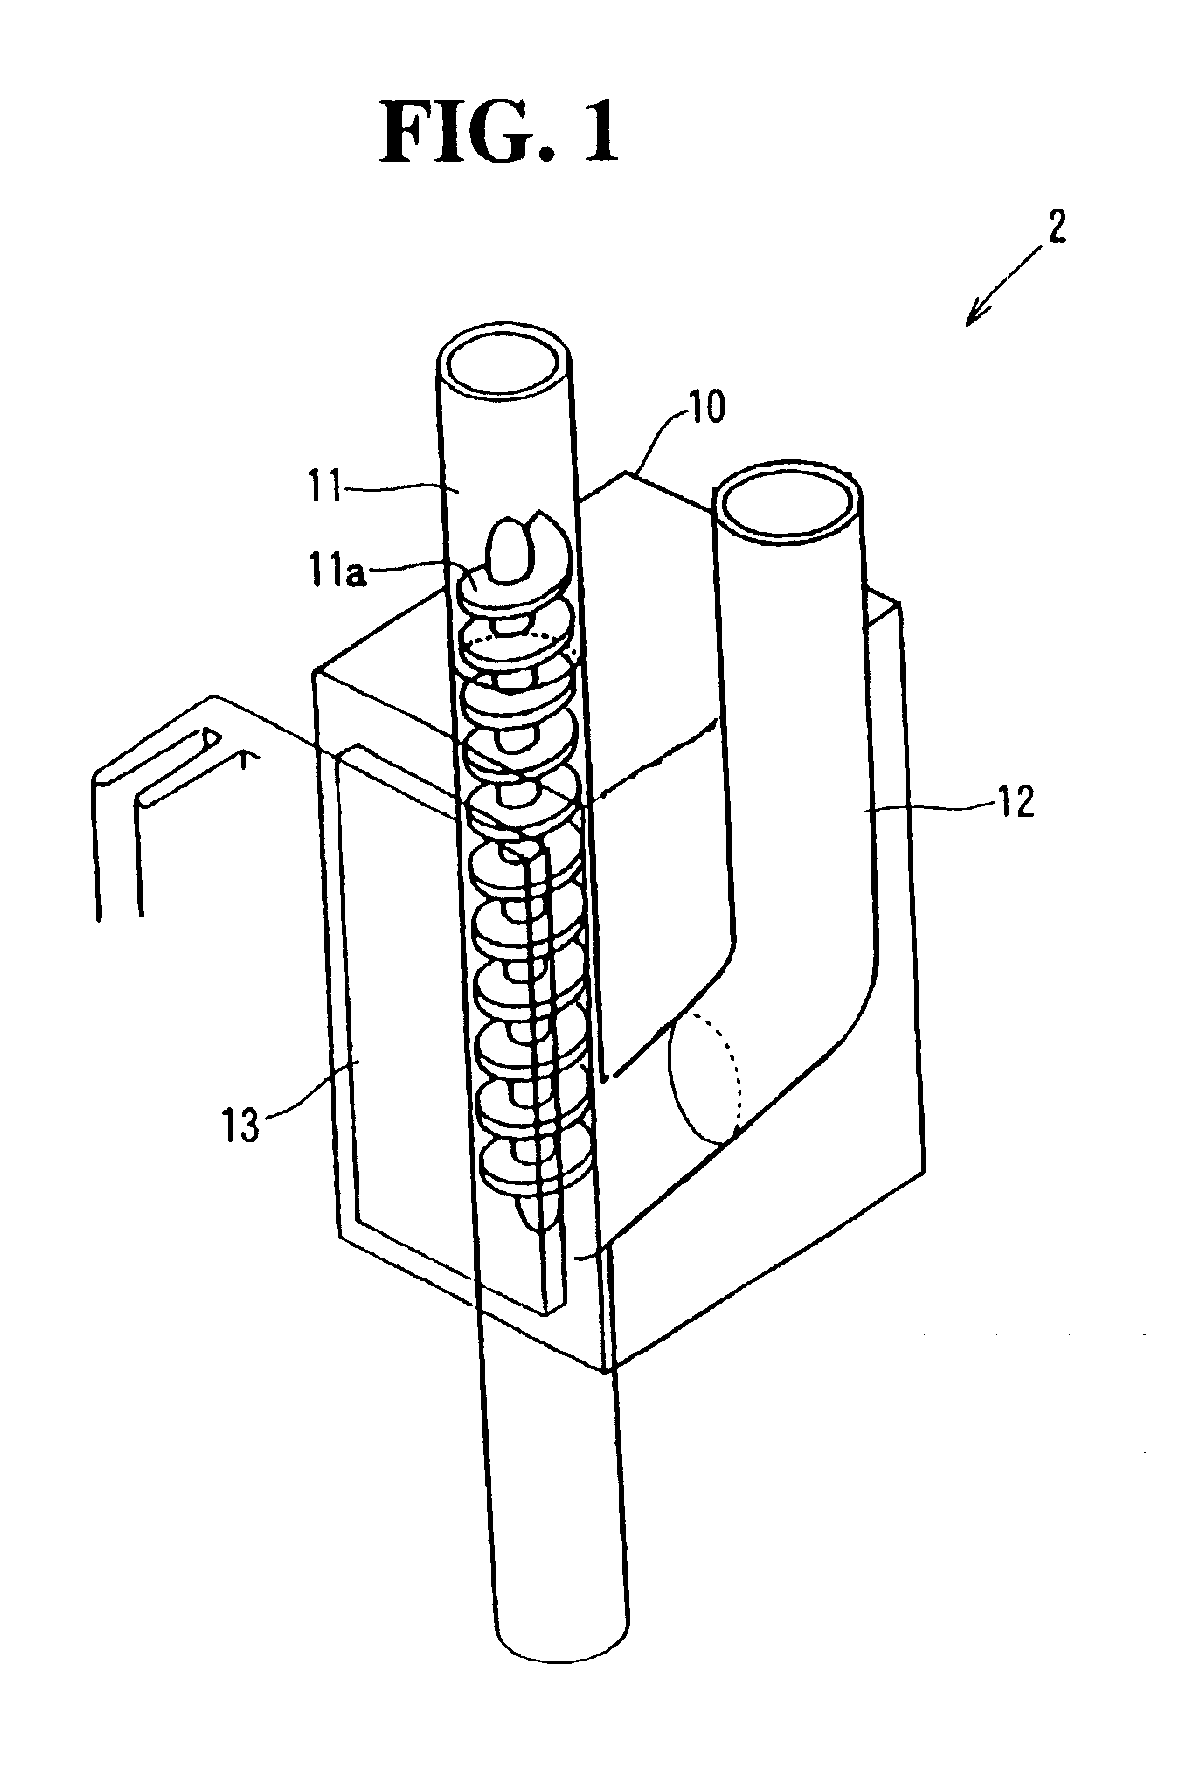 NOx-concentration measuring apparatus